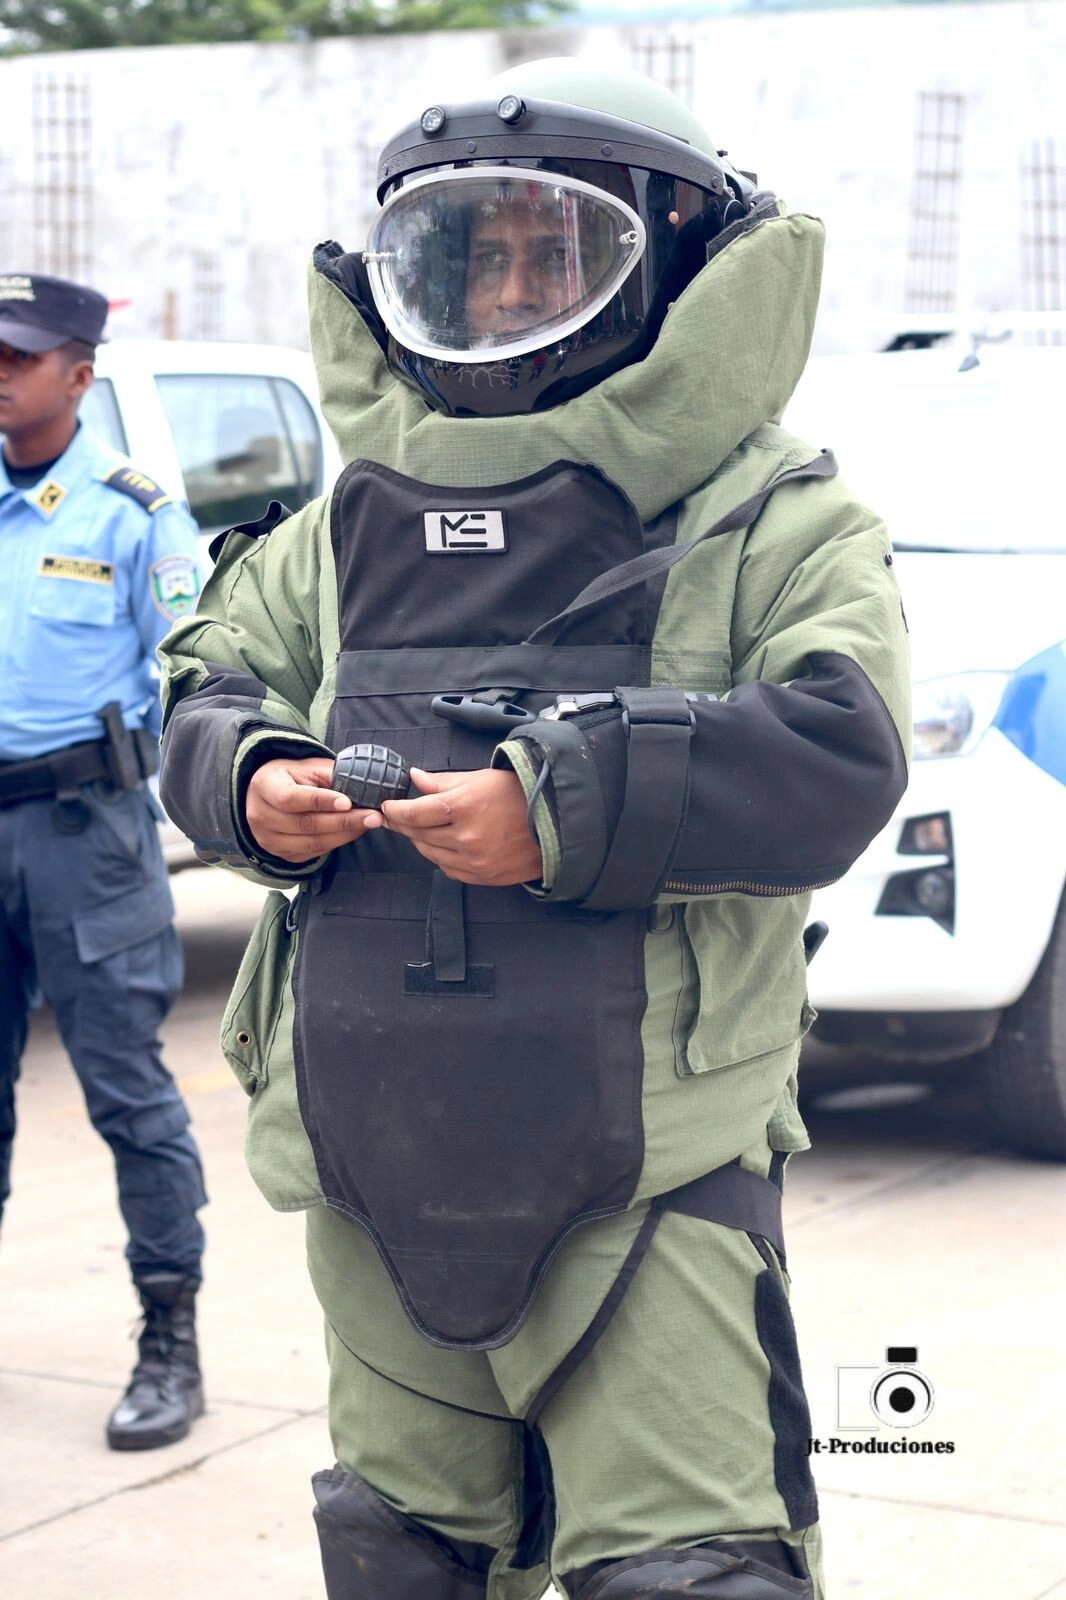 Diferentes direcciones policiales asignados la UMEP-15 Catacamas Olancho se preparan para brindar seguridad en el sector de responsabilidad